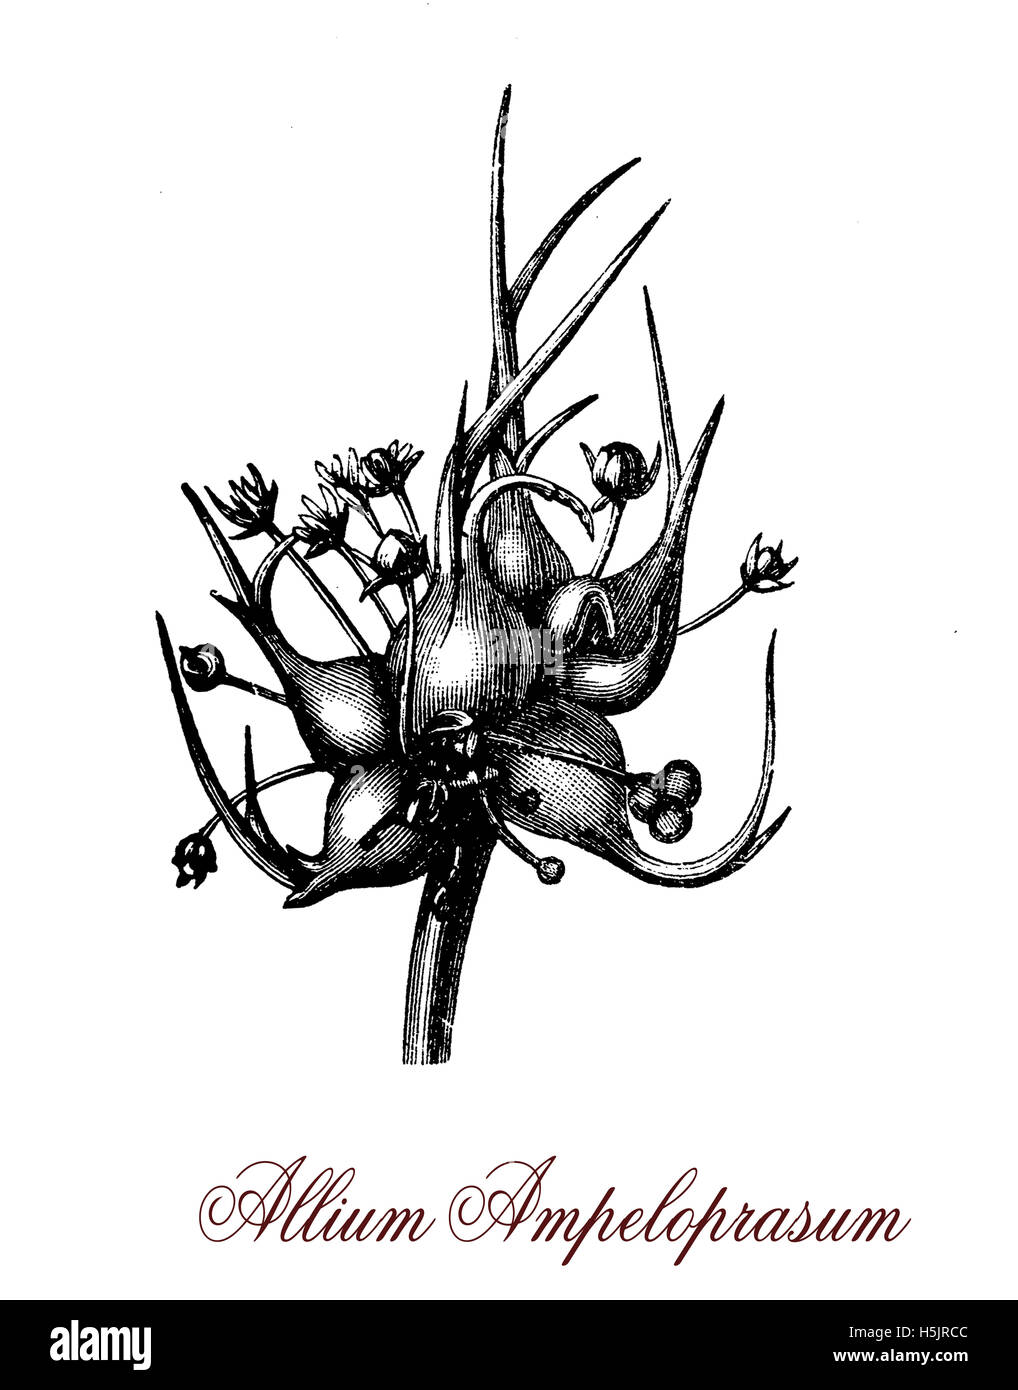 Laubbäume wilder Lauch ist ein Mitglied der Gattung Allium, bestehend aus Knoblauch und Zwiebel. Im Gegensatz zu seinen bekannteren Geschwister die gemeinhin als essbare gehören die Blätter. Stockfoto